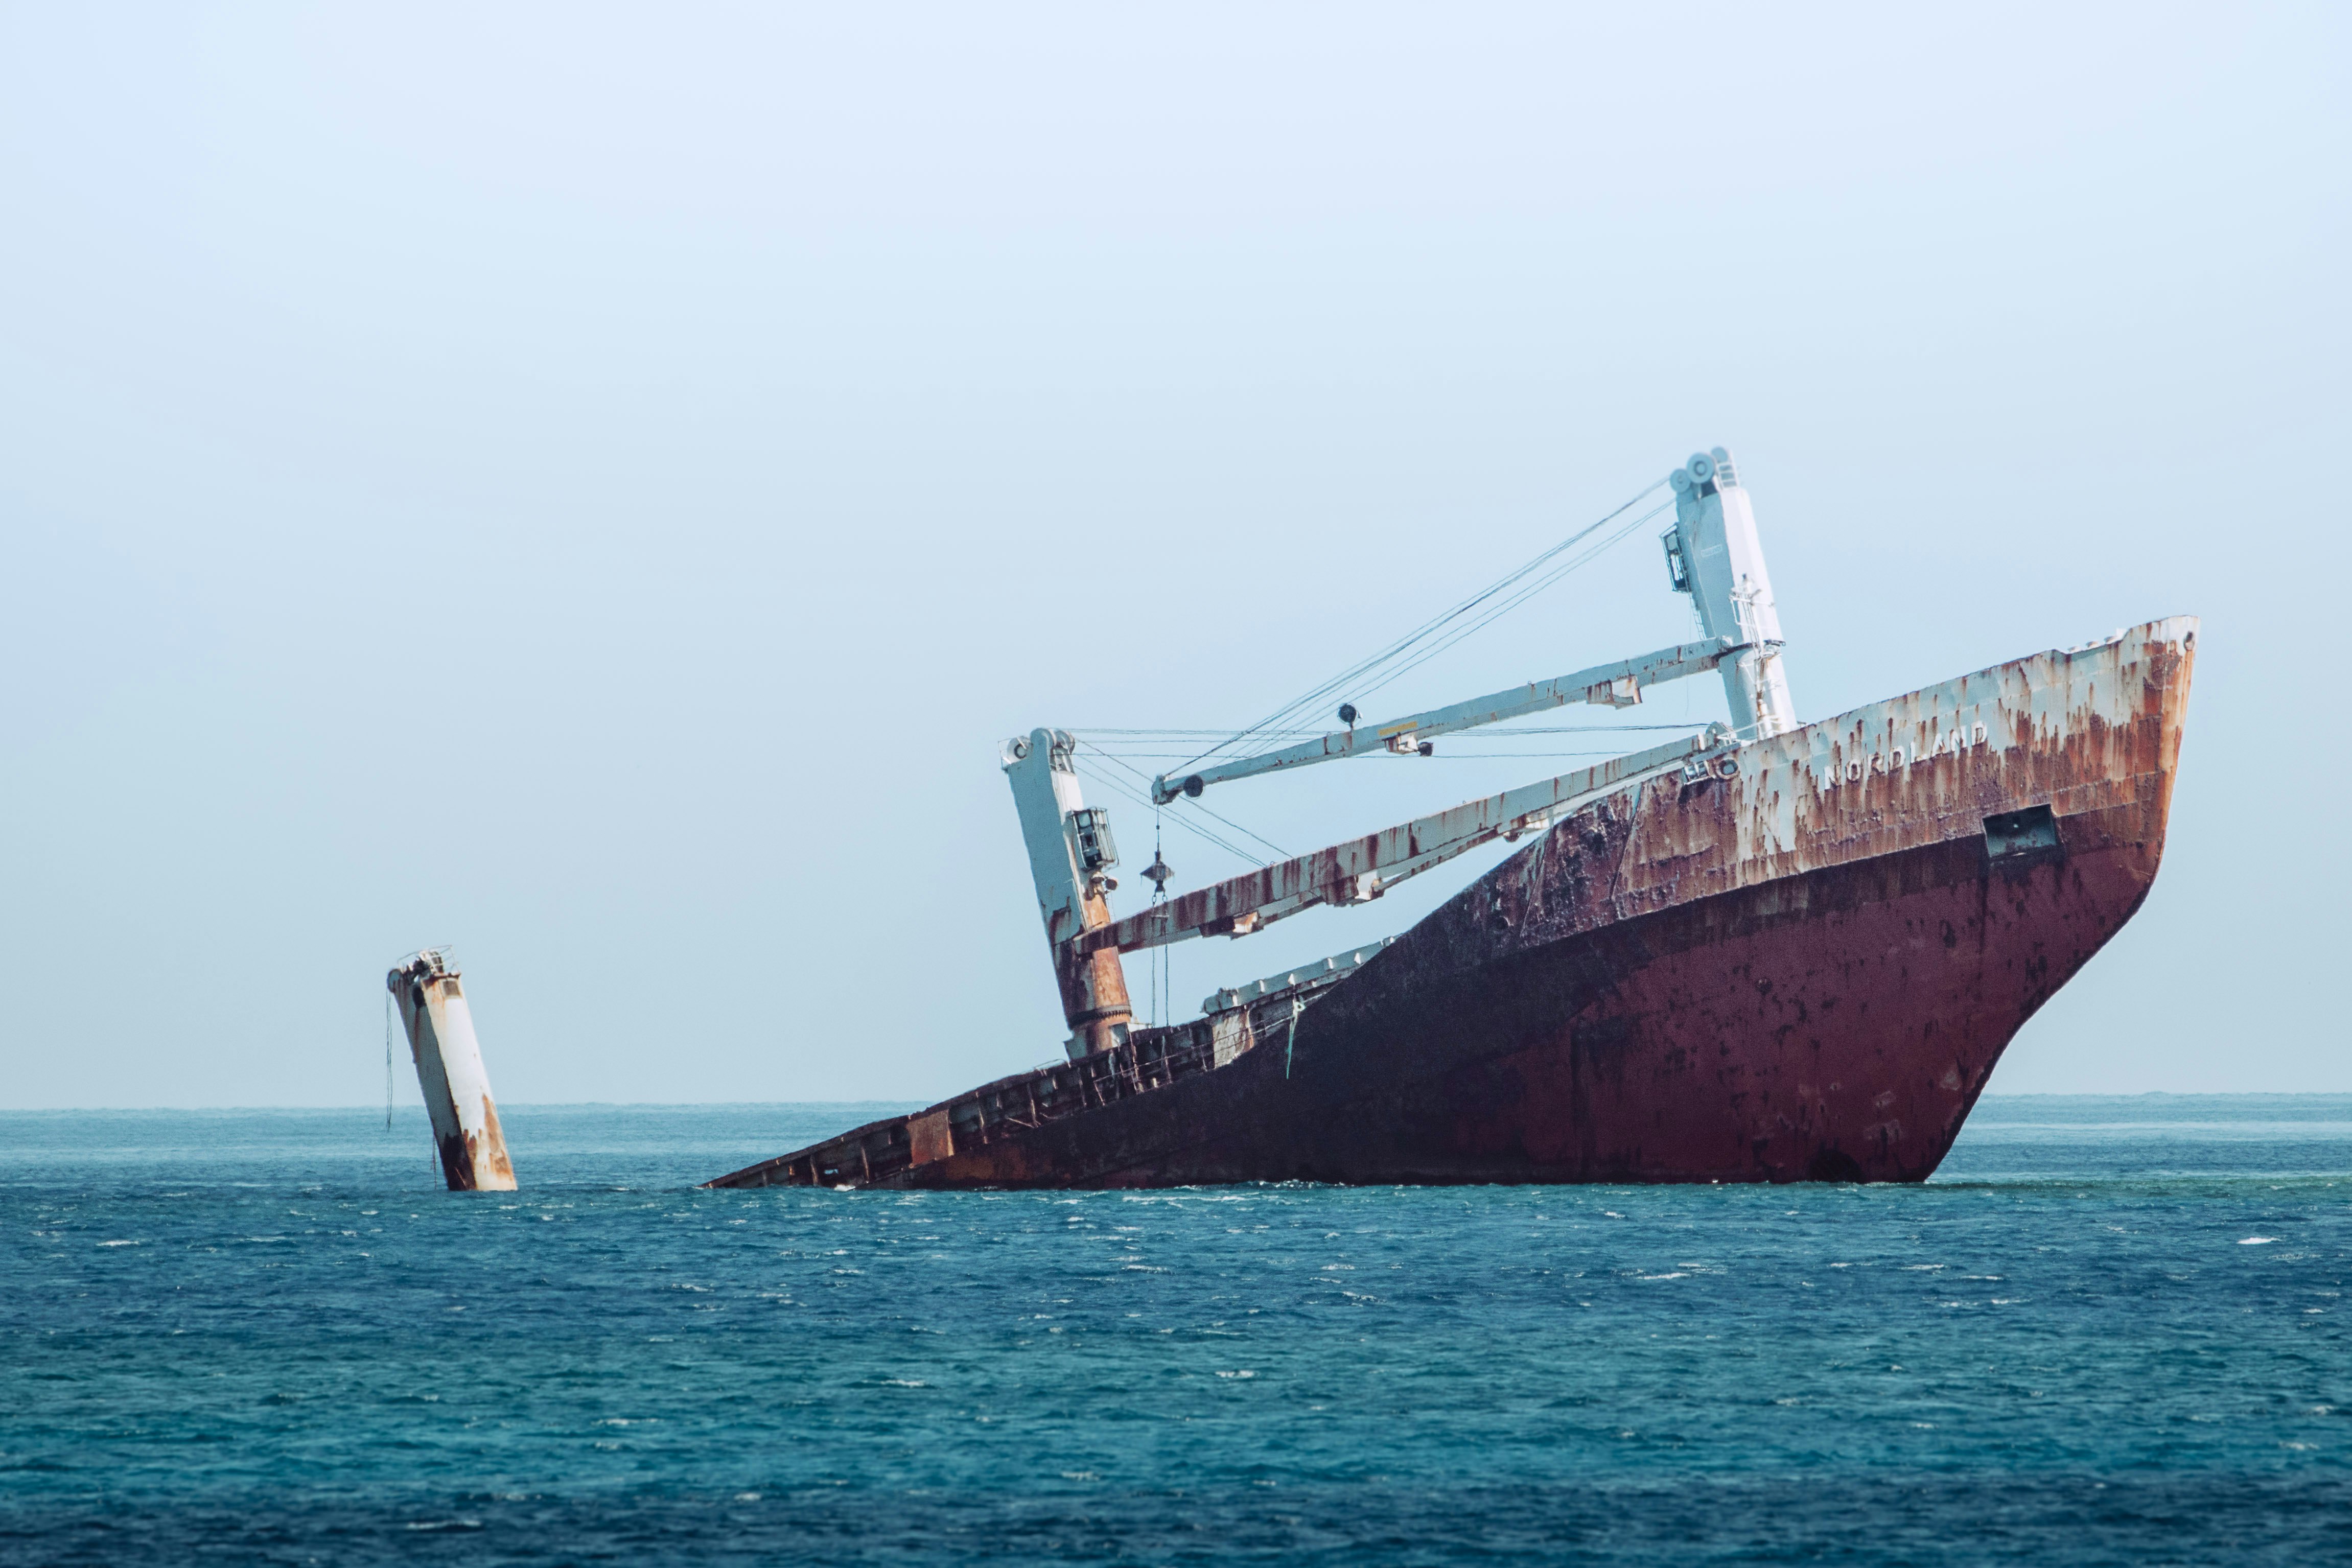 ship sinking on ocean at daytime